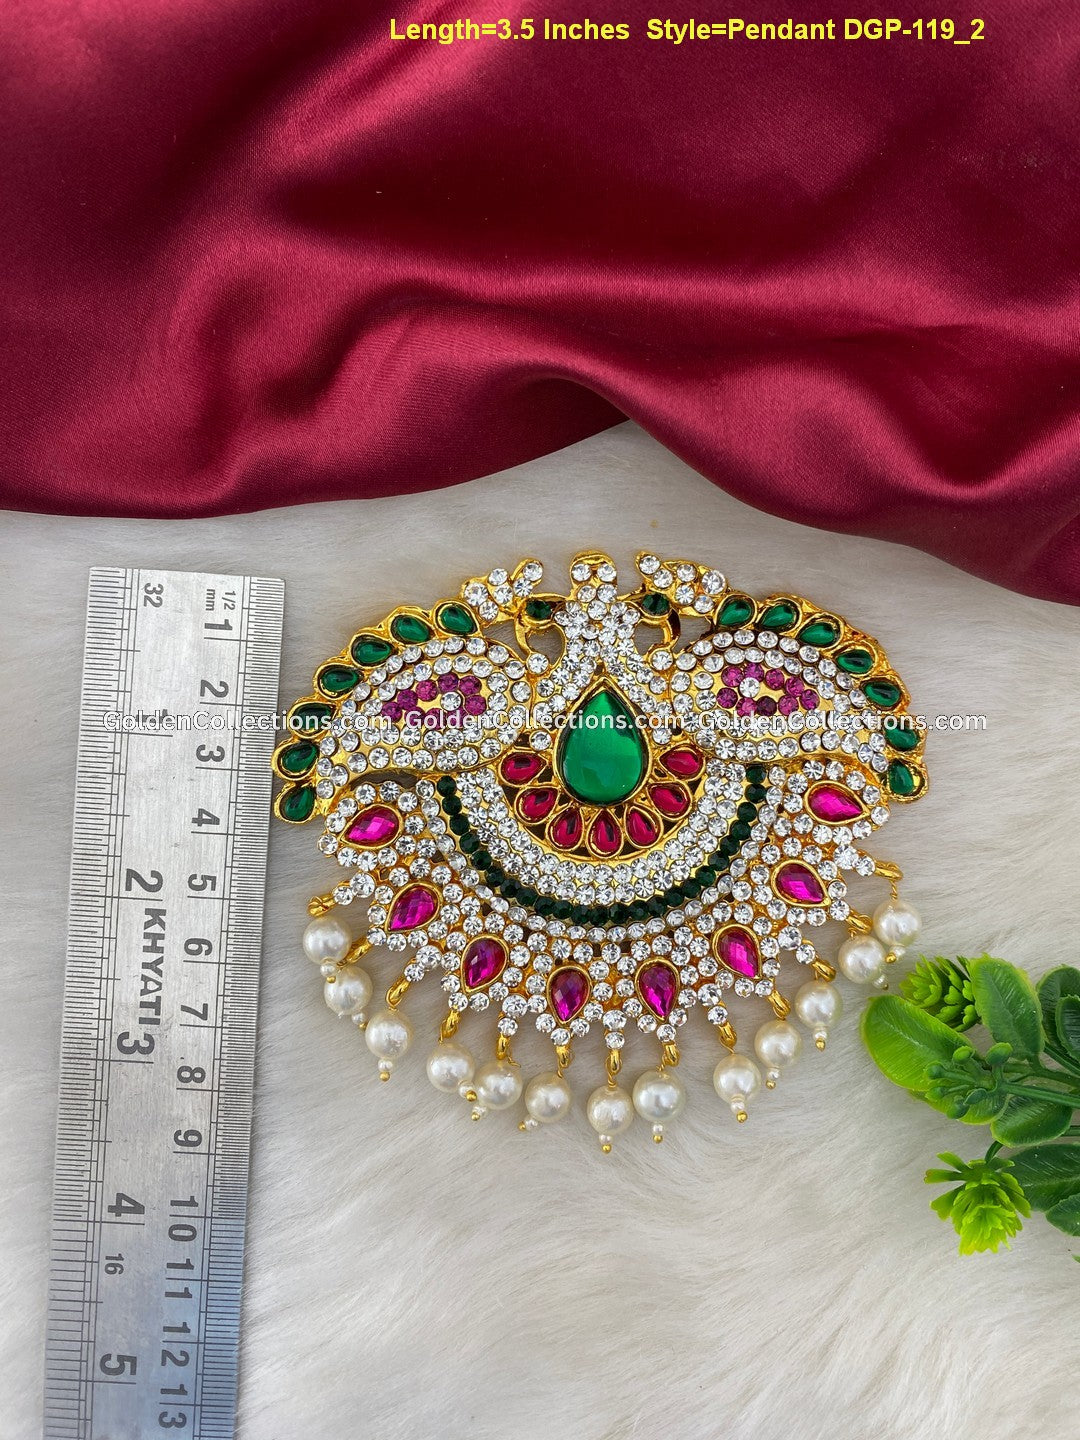 Divine God Pendant - Exquisite Spiritual Jewelry DGP-119 2